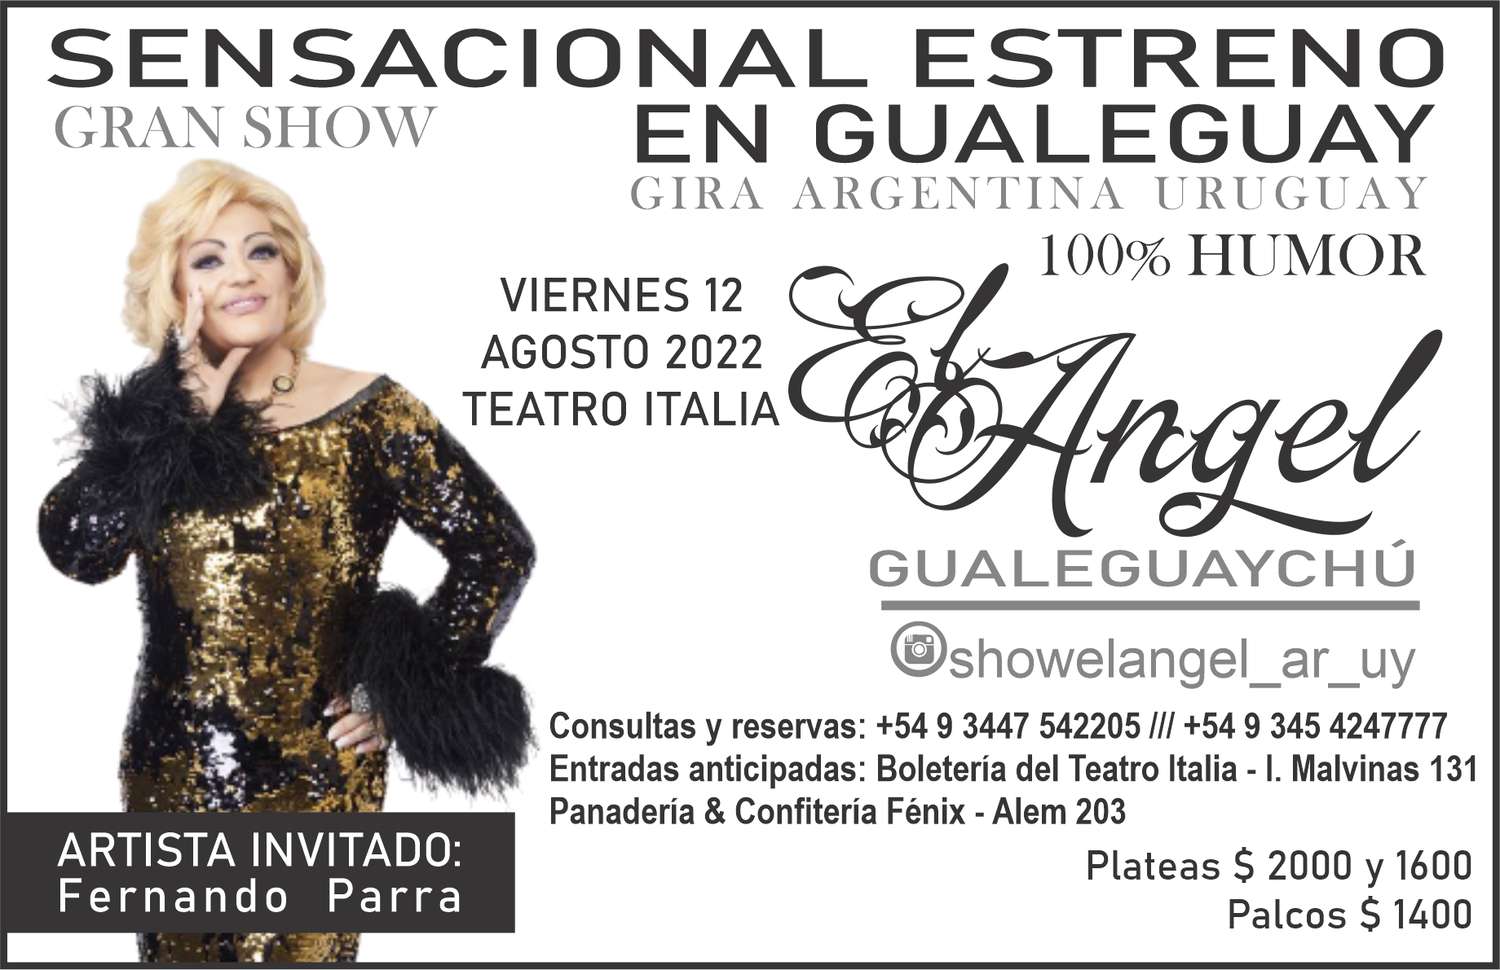 El Ángel, icono del humor argentino en Gualeguay llega al Teatro Italia